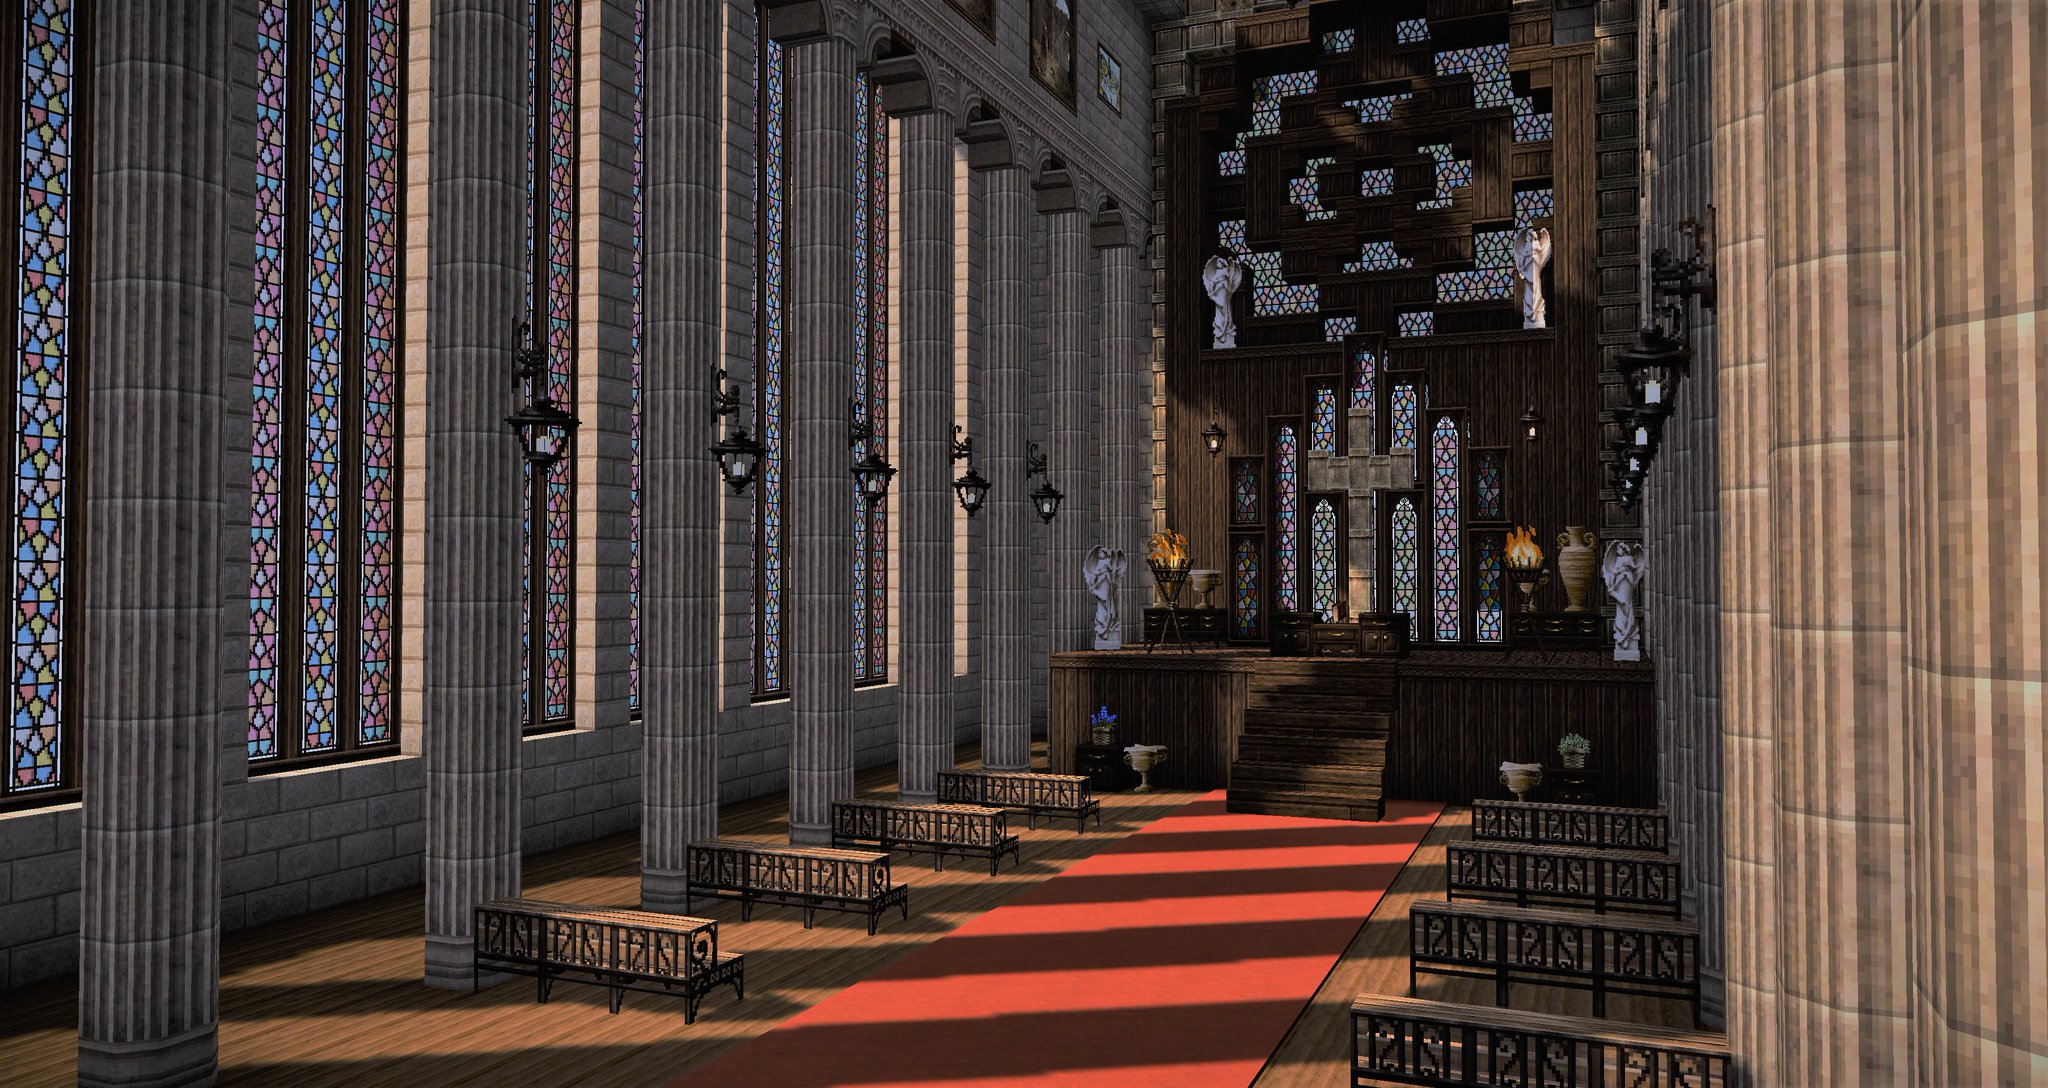 Milk猫 Minecraft Miniaturia ミニチュリの新ガラスブロックで教会の内装を作ってみました